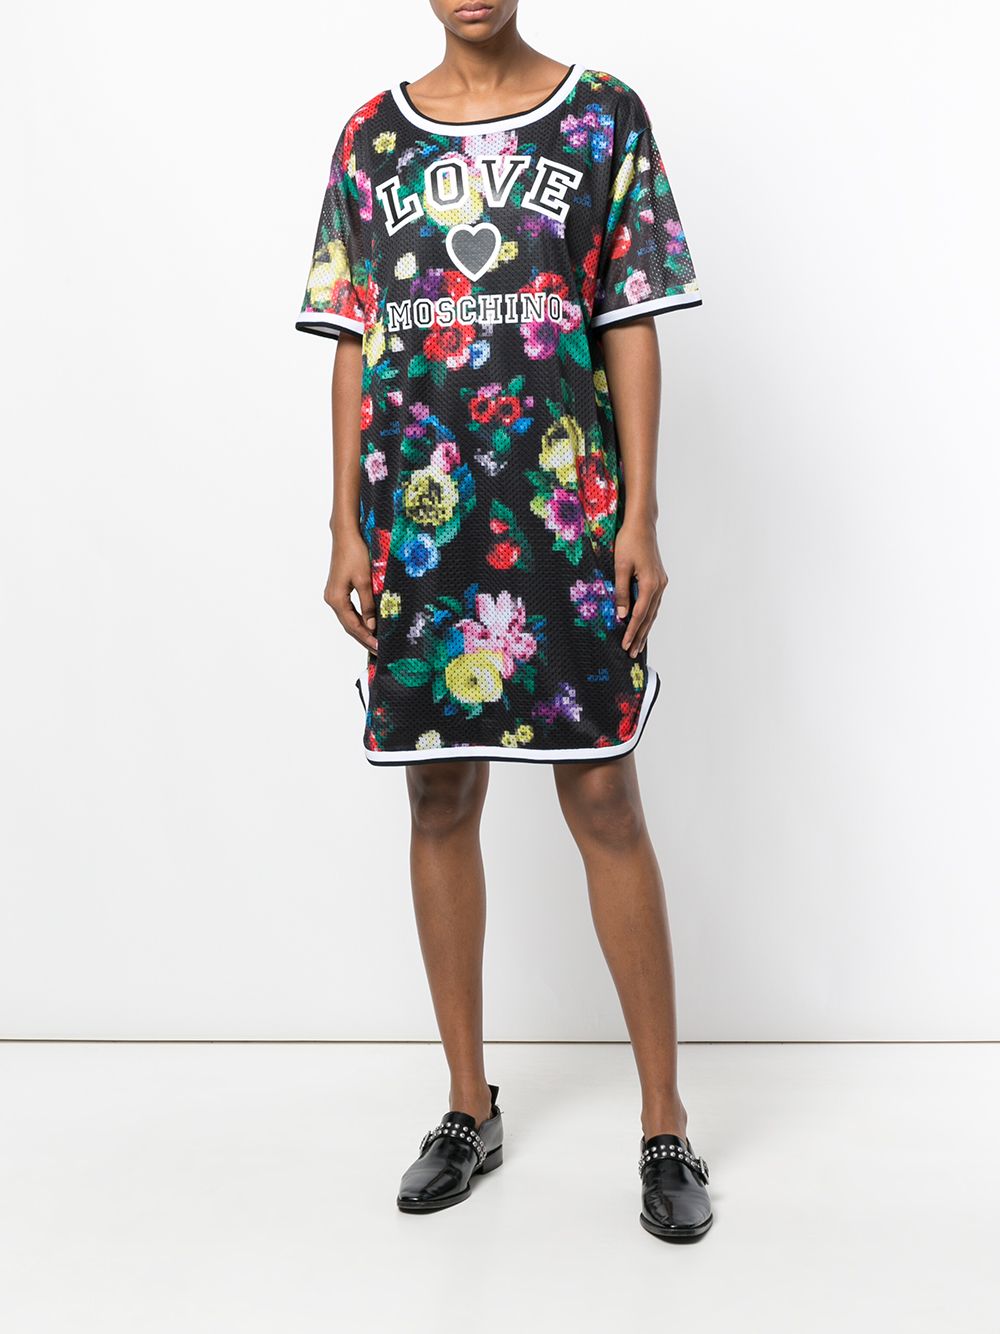 Imagen principal de producto de Love Moschino vestido estilo camiseta con estampado floral - Negro - Moschino